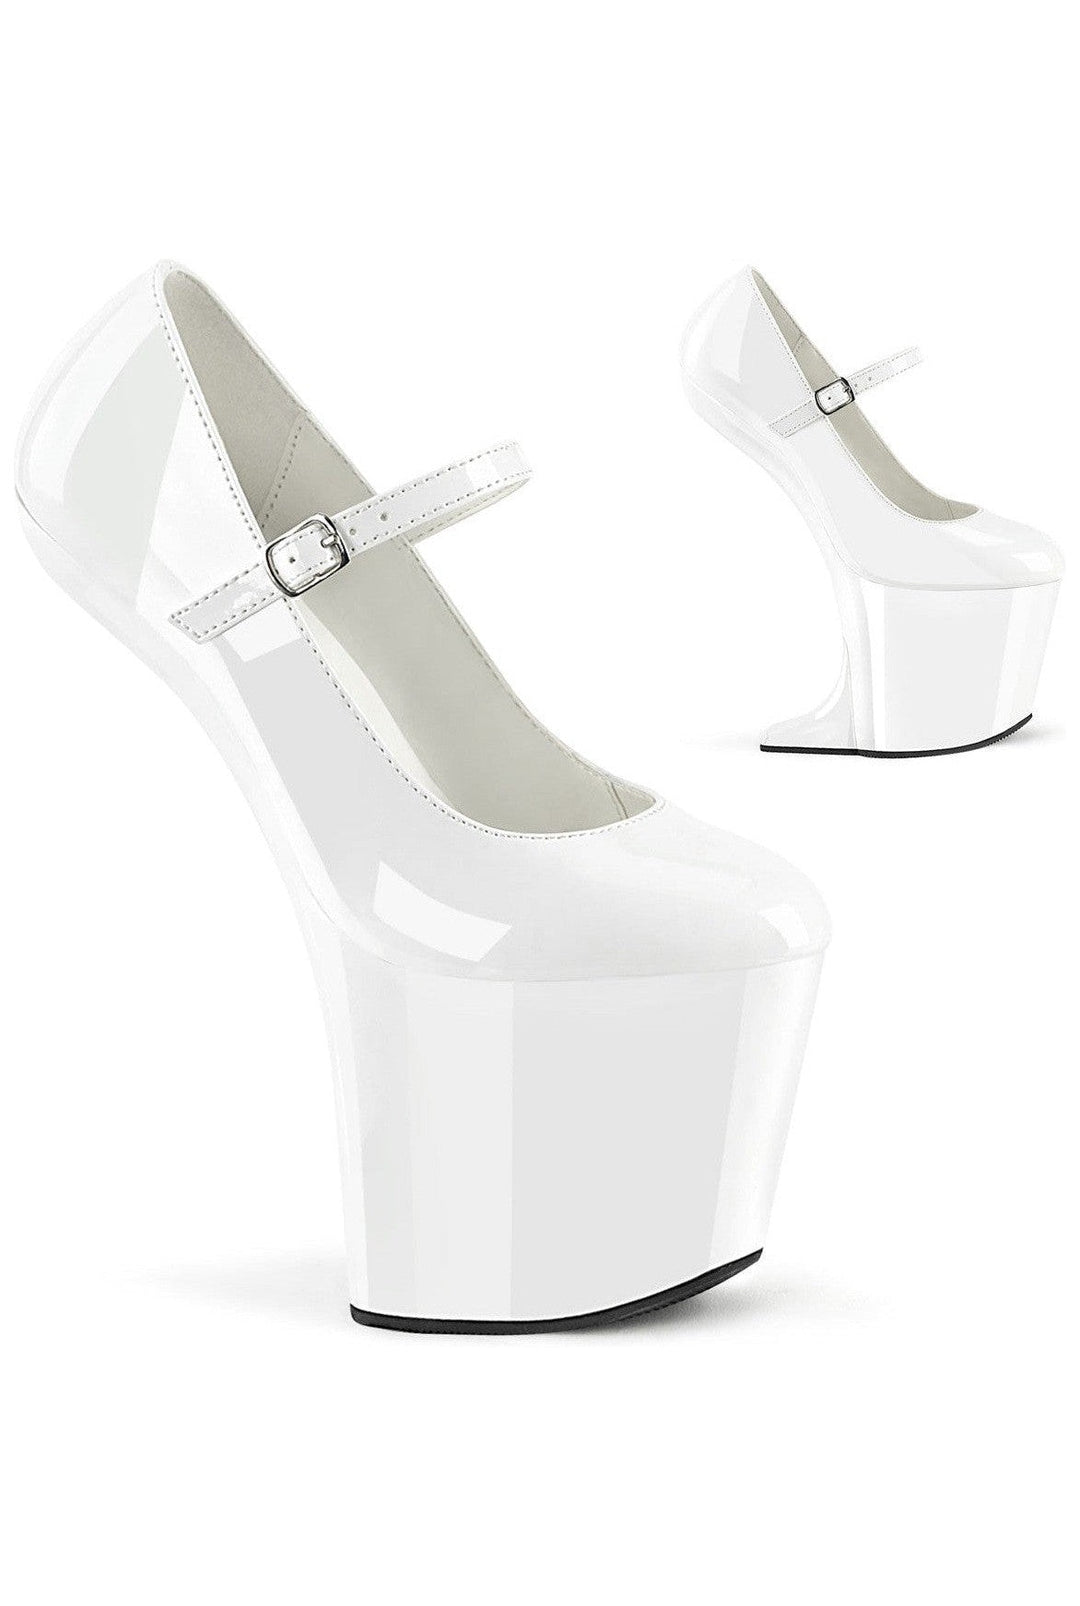 CRAZE-880 White Patent Pump-Pumps- Stripper Shoes at SEXYSHOES.COM